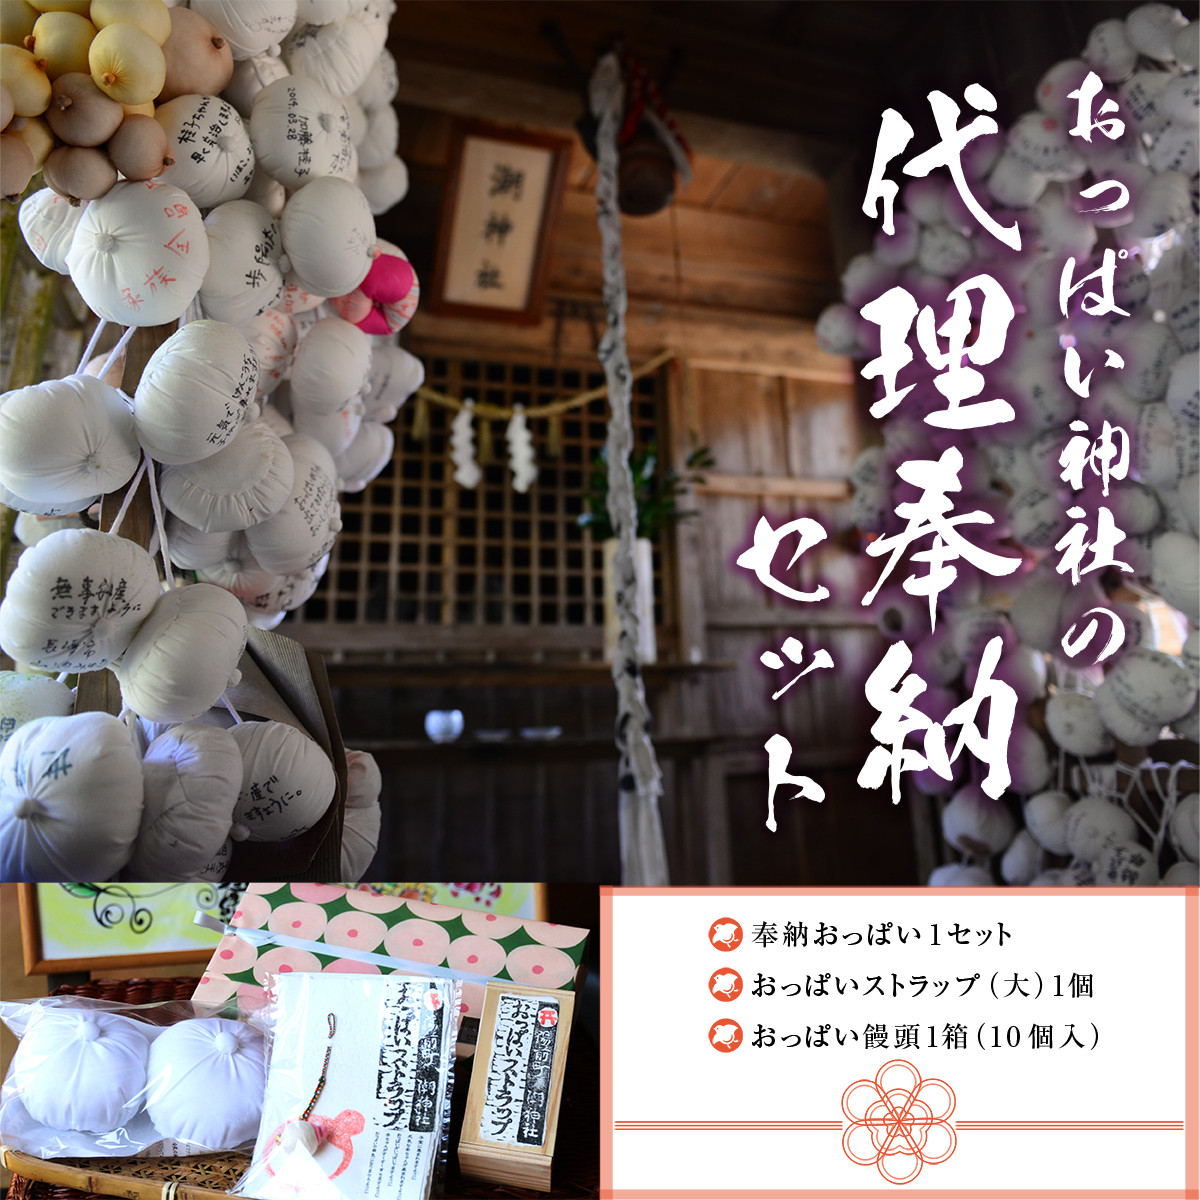 おっぱいの神様】おっぱい神社の代理奉納セット - 熊本県湯前町